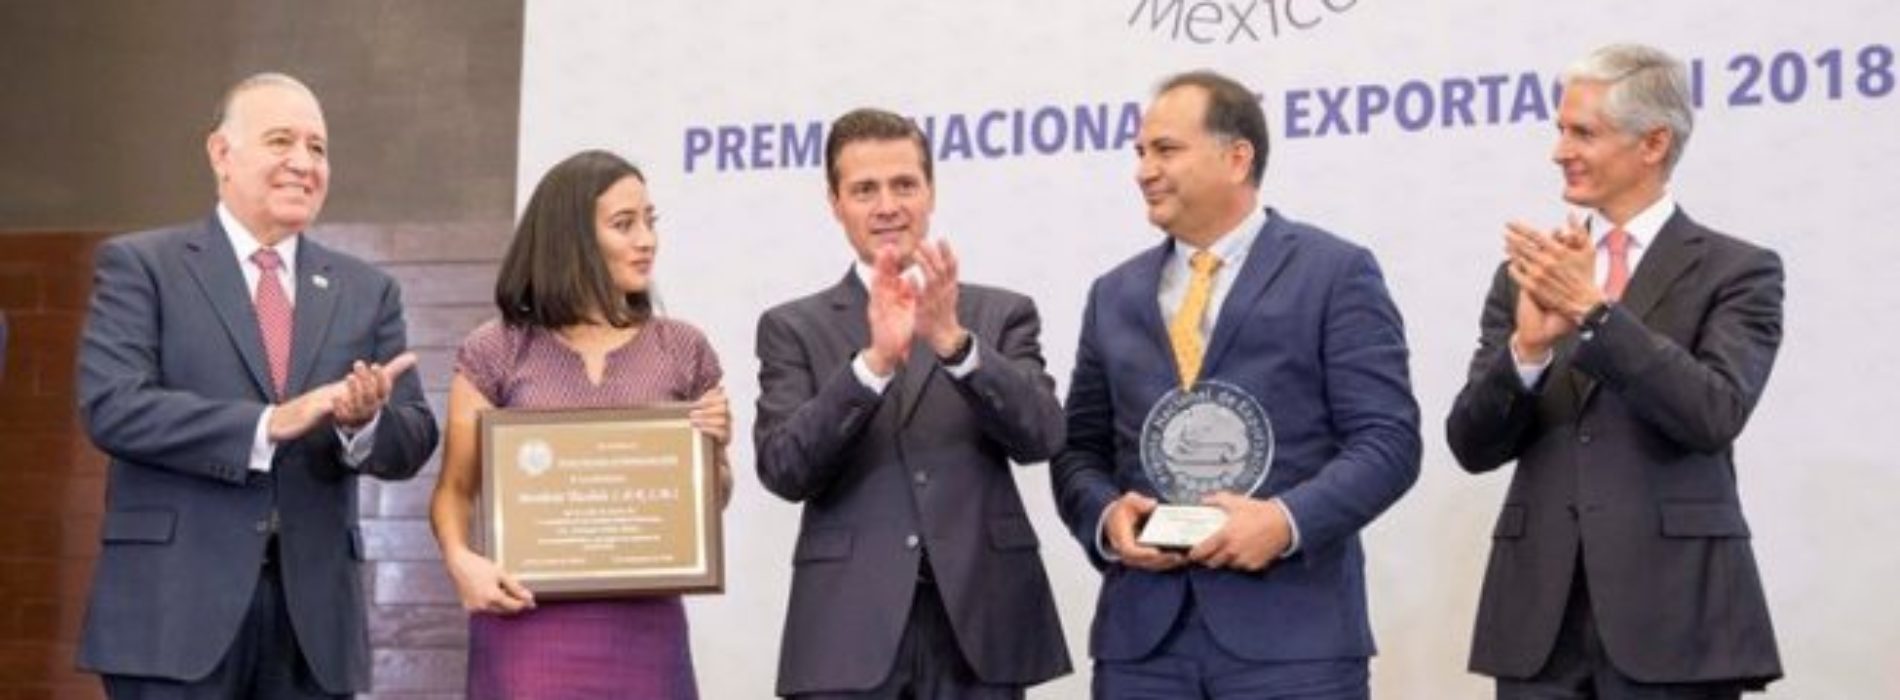 Destilería oaxaqueña obtiene Premio Nacional de Exportación
2018